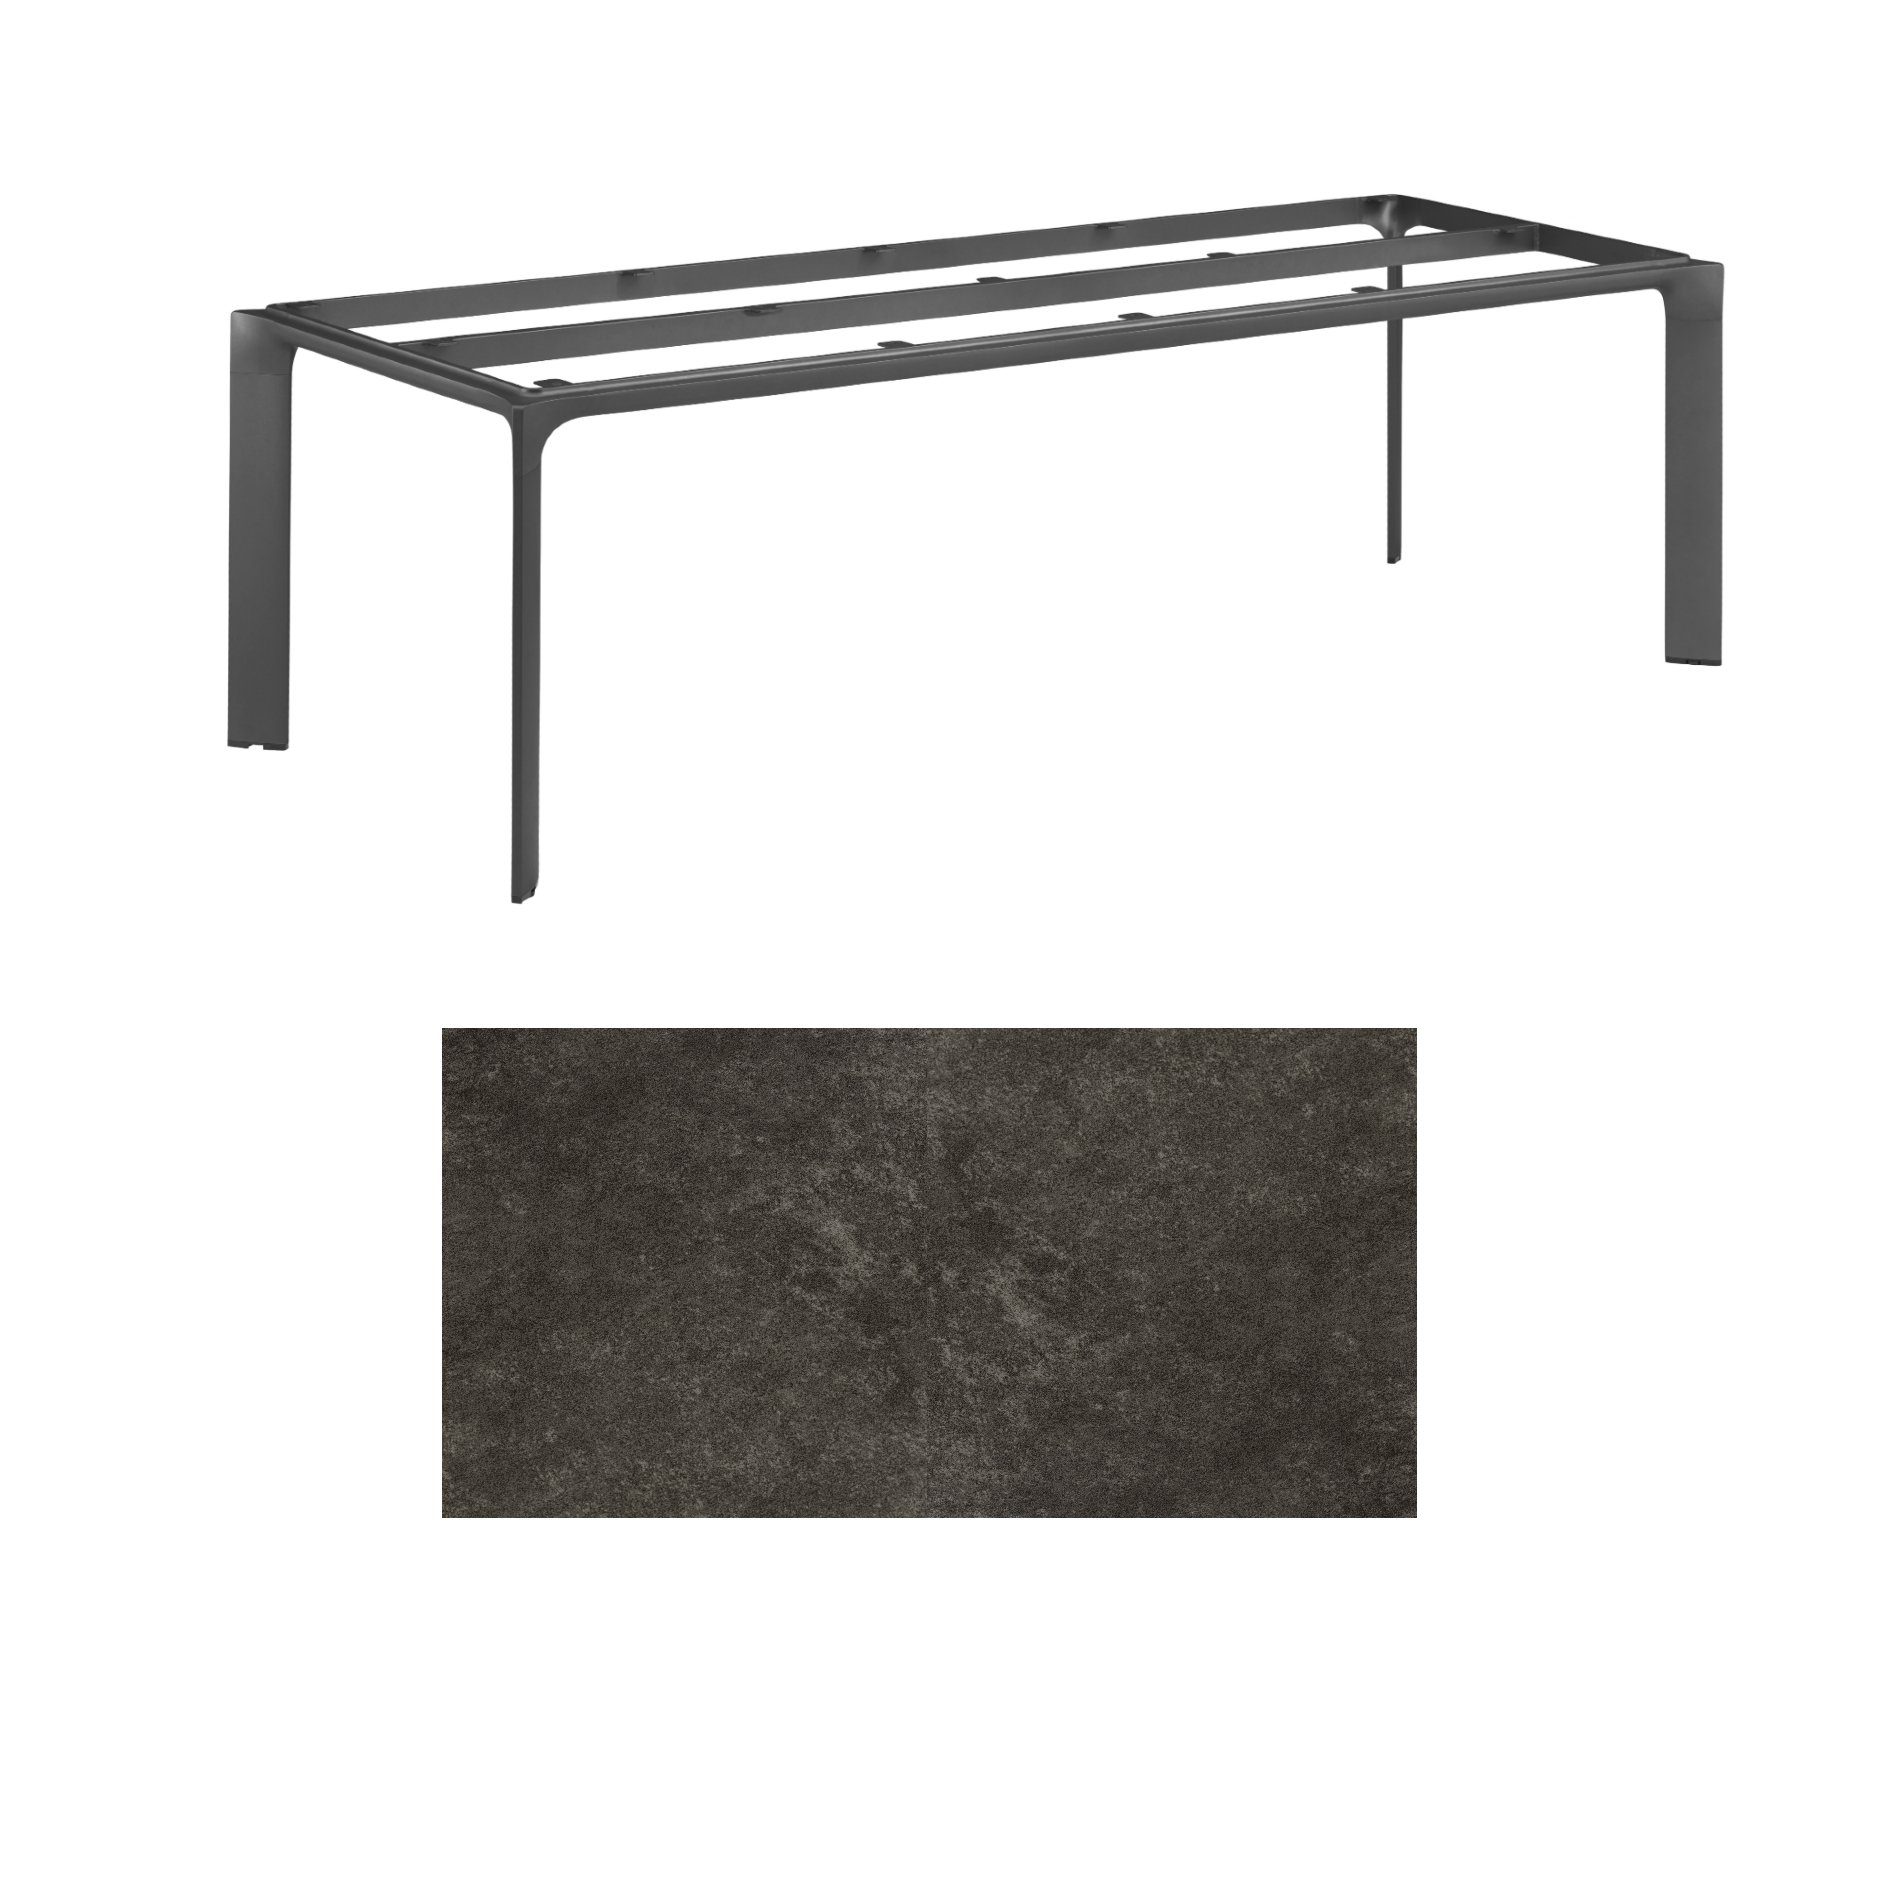 Kettler "Diamond" Tischsystem Gartentisch, Tischgestell 220x95cm, Alu anthrazit, Tischplatte Keramik anthrazit